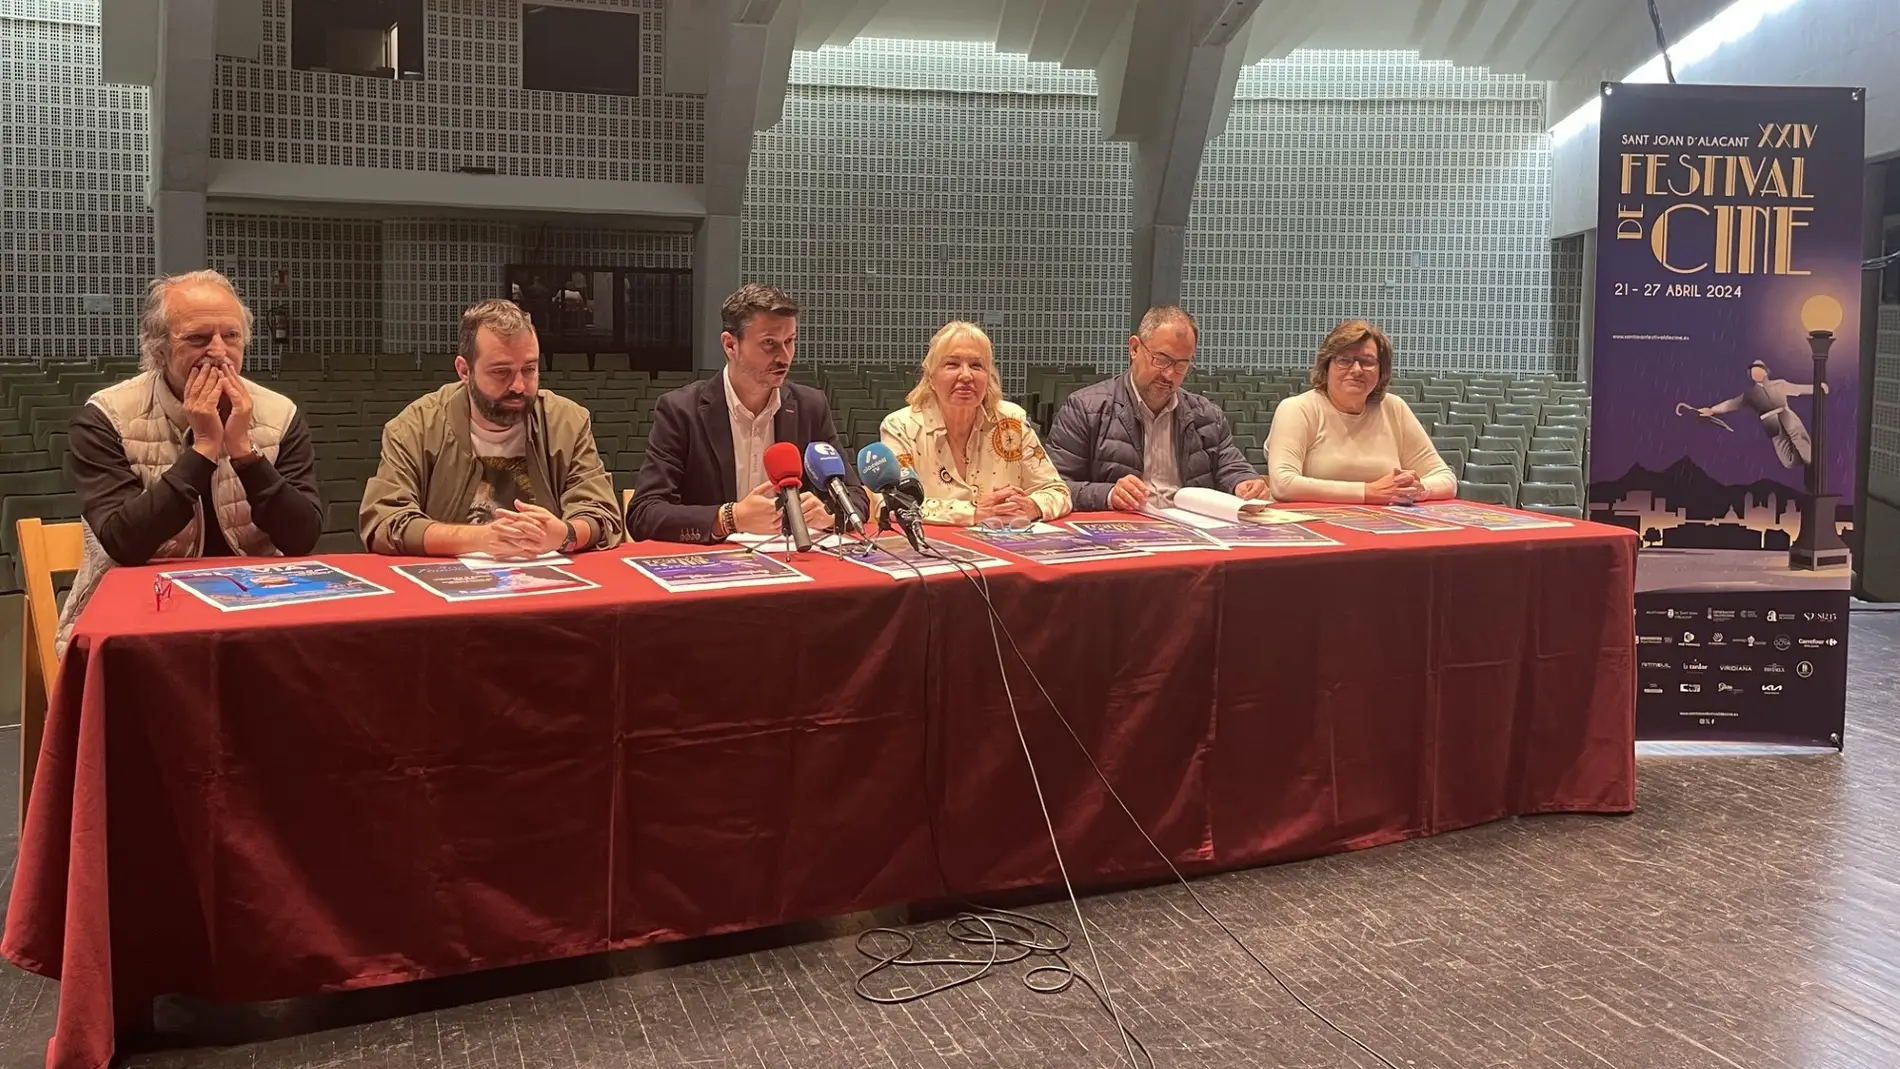 Presentación del Festival de Cine de Sant Joan d'Alacant 2024